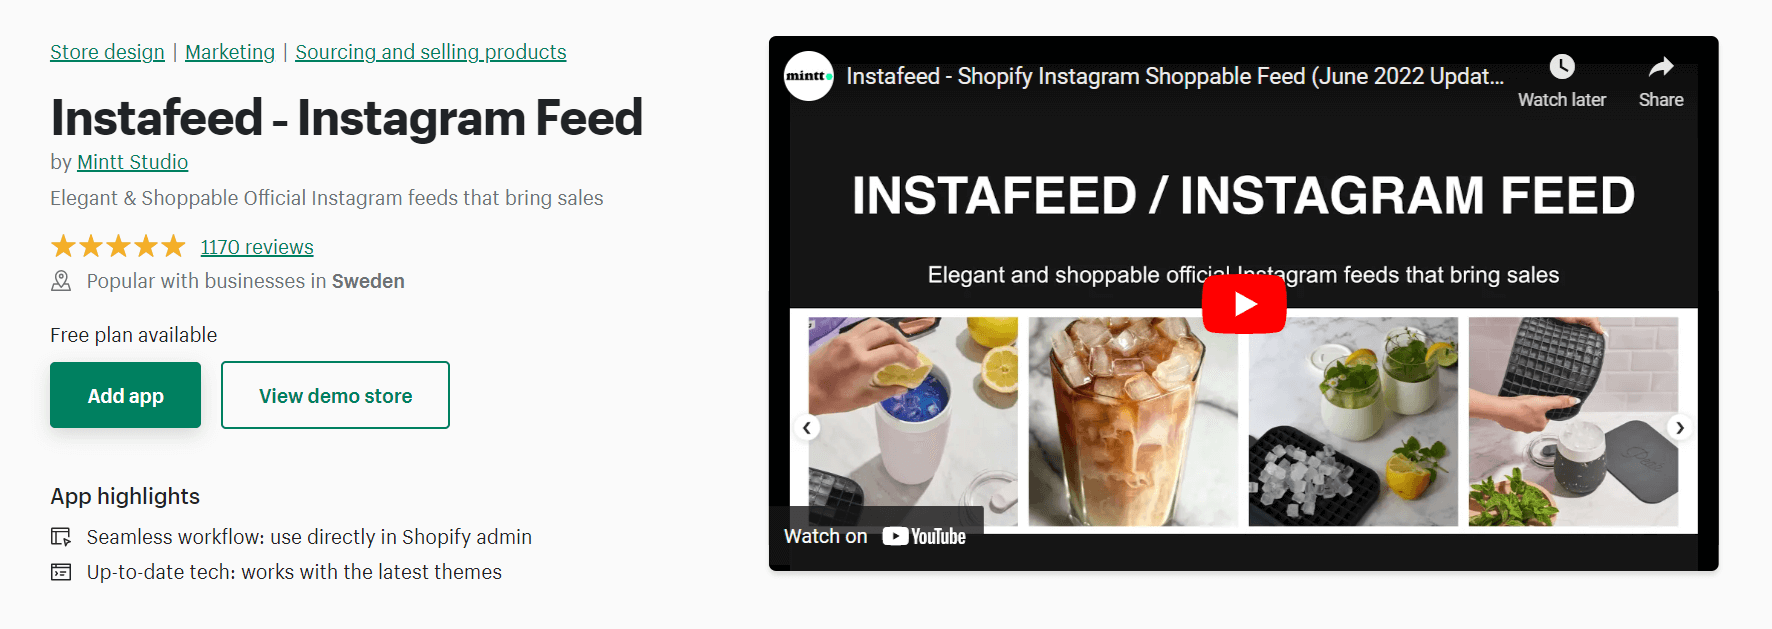 Instafeed social media marketing app